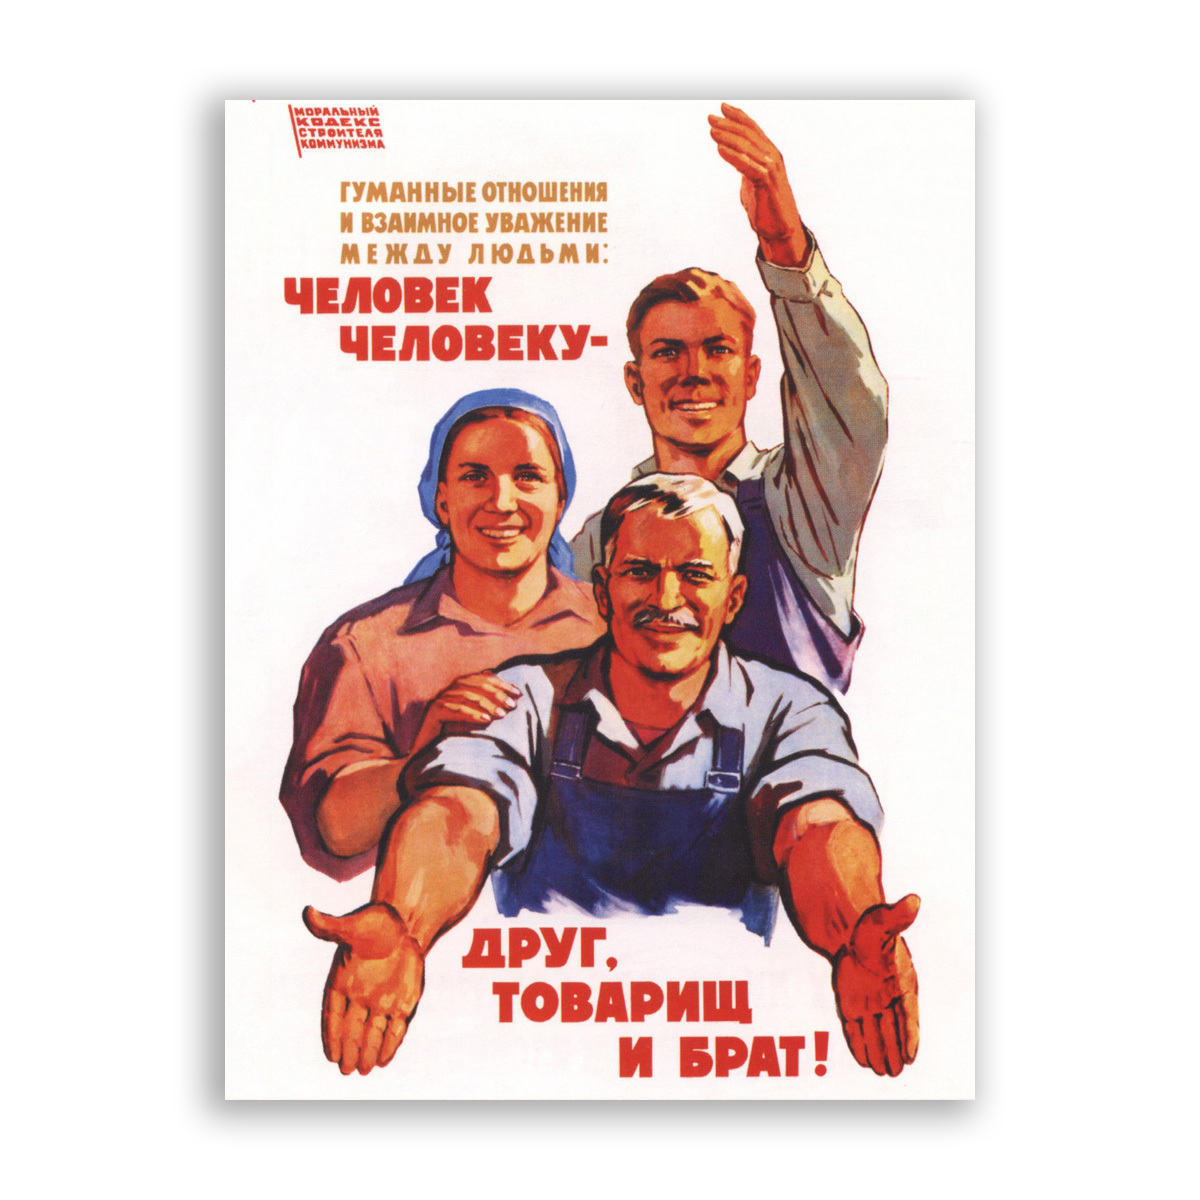 Гуманный характер. Друг товарищ и брат. Человек человеку друг товарищ и брат. Советские плакаты. Советский человек плакат.